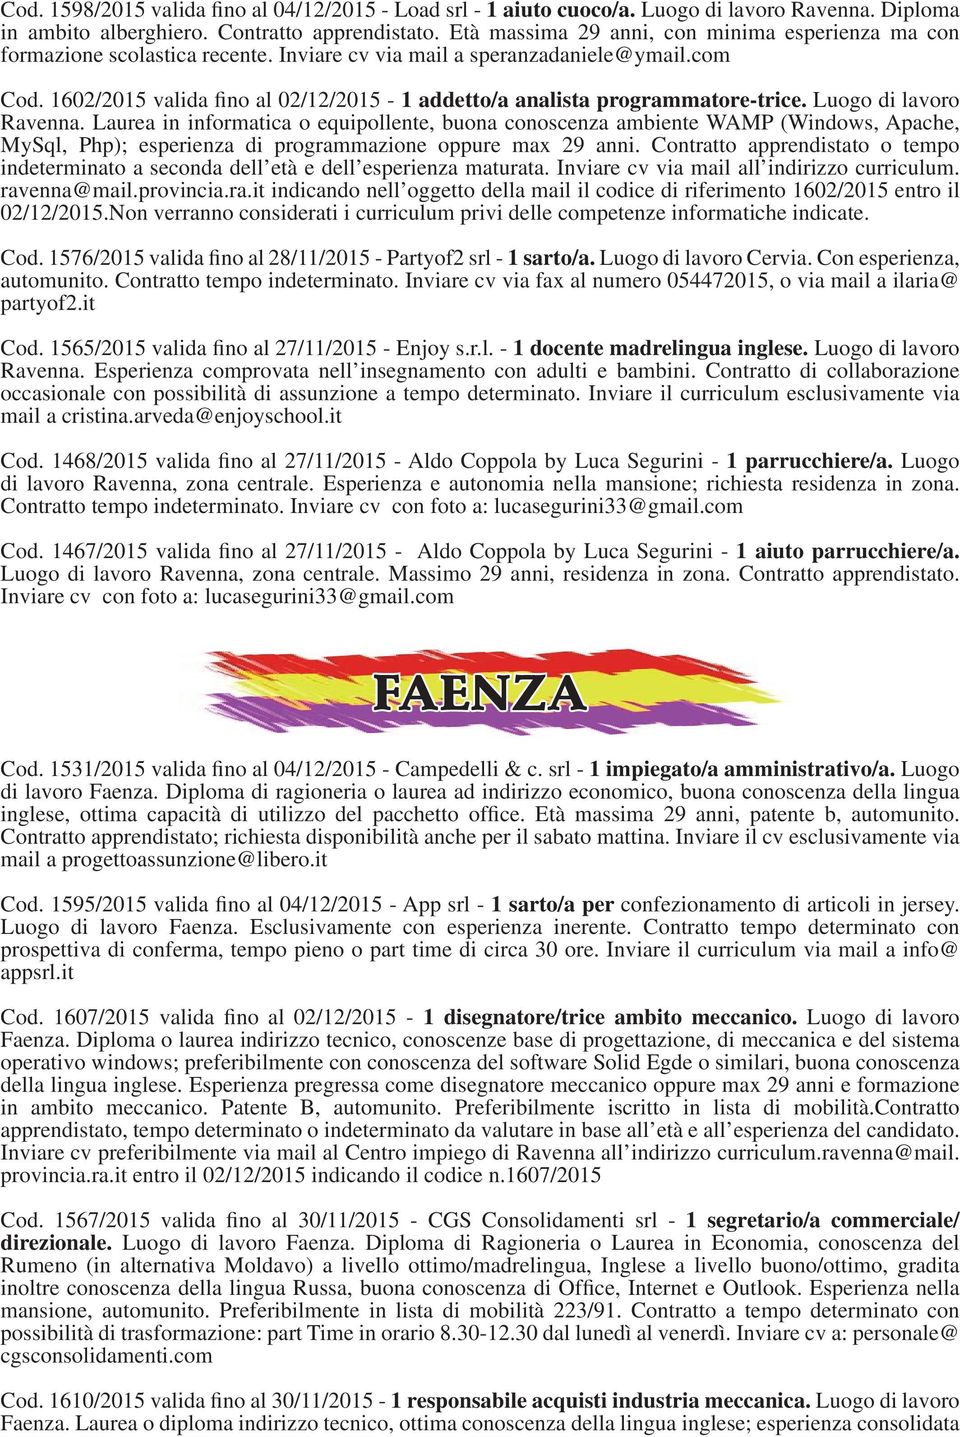 1602/2015 valida fino al 02/12/2015-1 addetto/a analista programmatore-trice. Luogo di lavoro Ravenna.